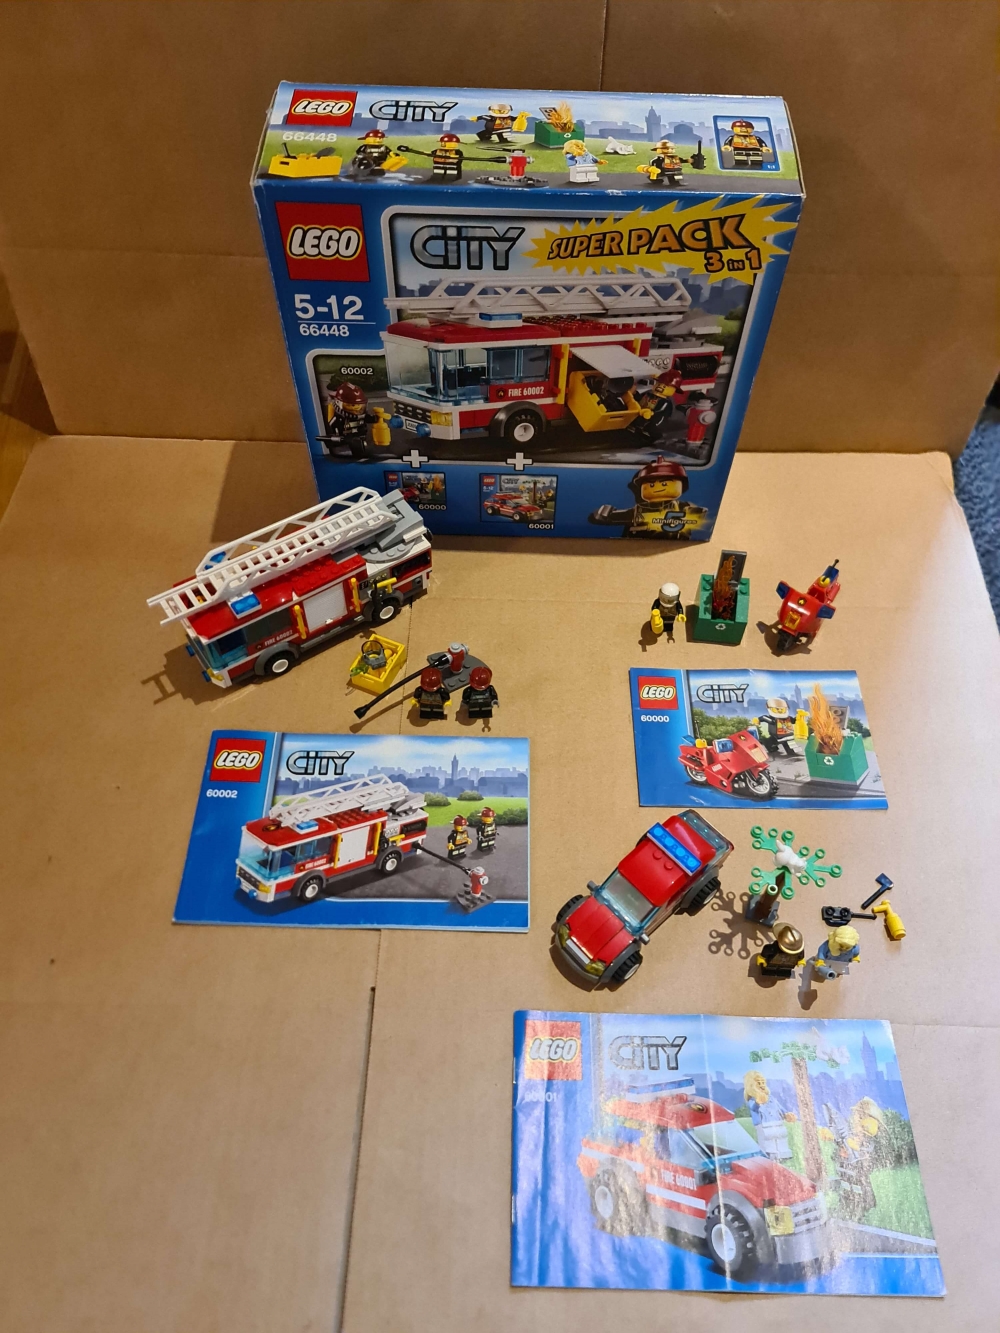 Sett 66448 fra Lego City serien.
Settet består av følgende 3 sett.
60000 - Fire Motorcycle
60001 - Fire Chief Car
60002 - Fire Truck

Alt komplett I god stand. Med manualer og eske.